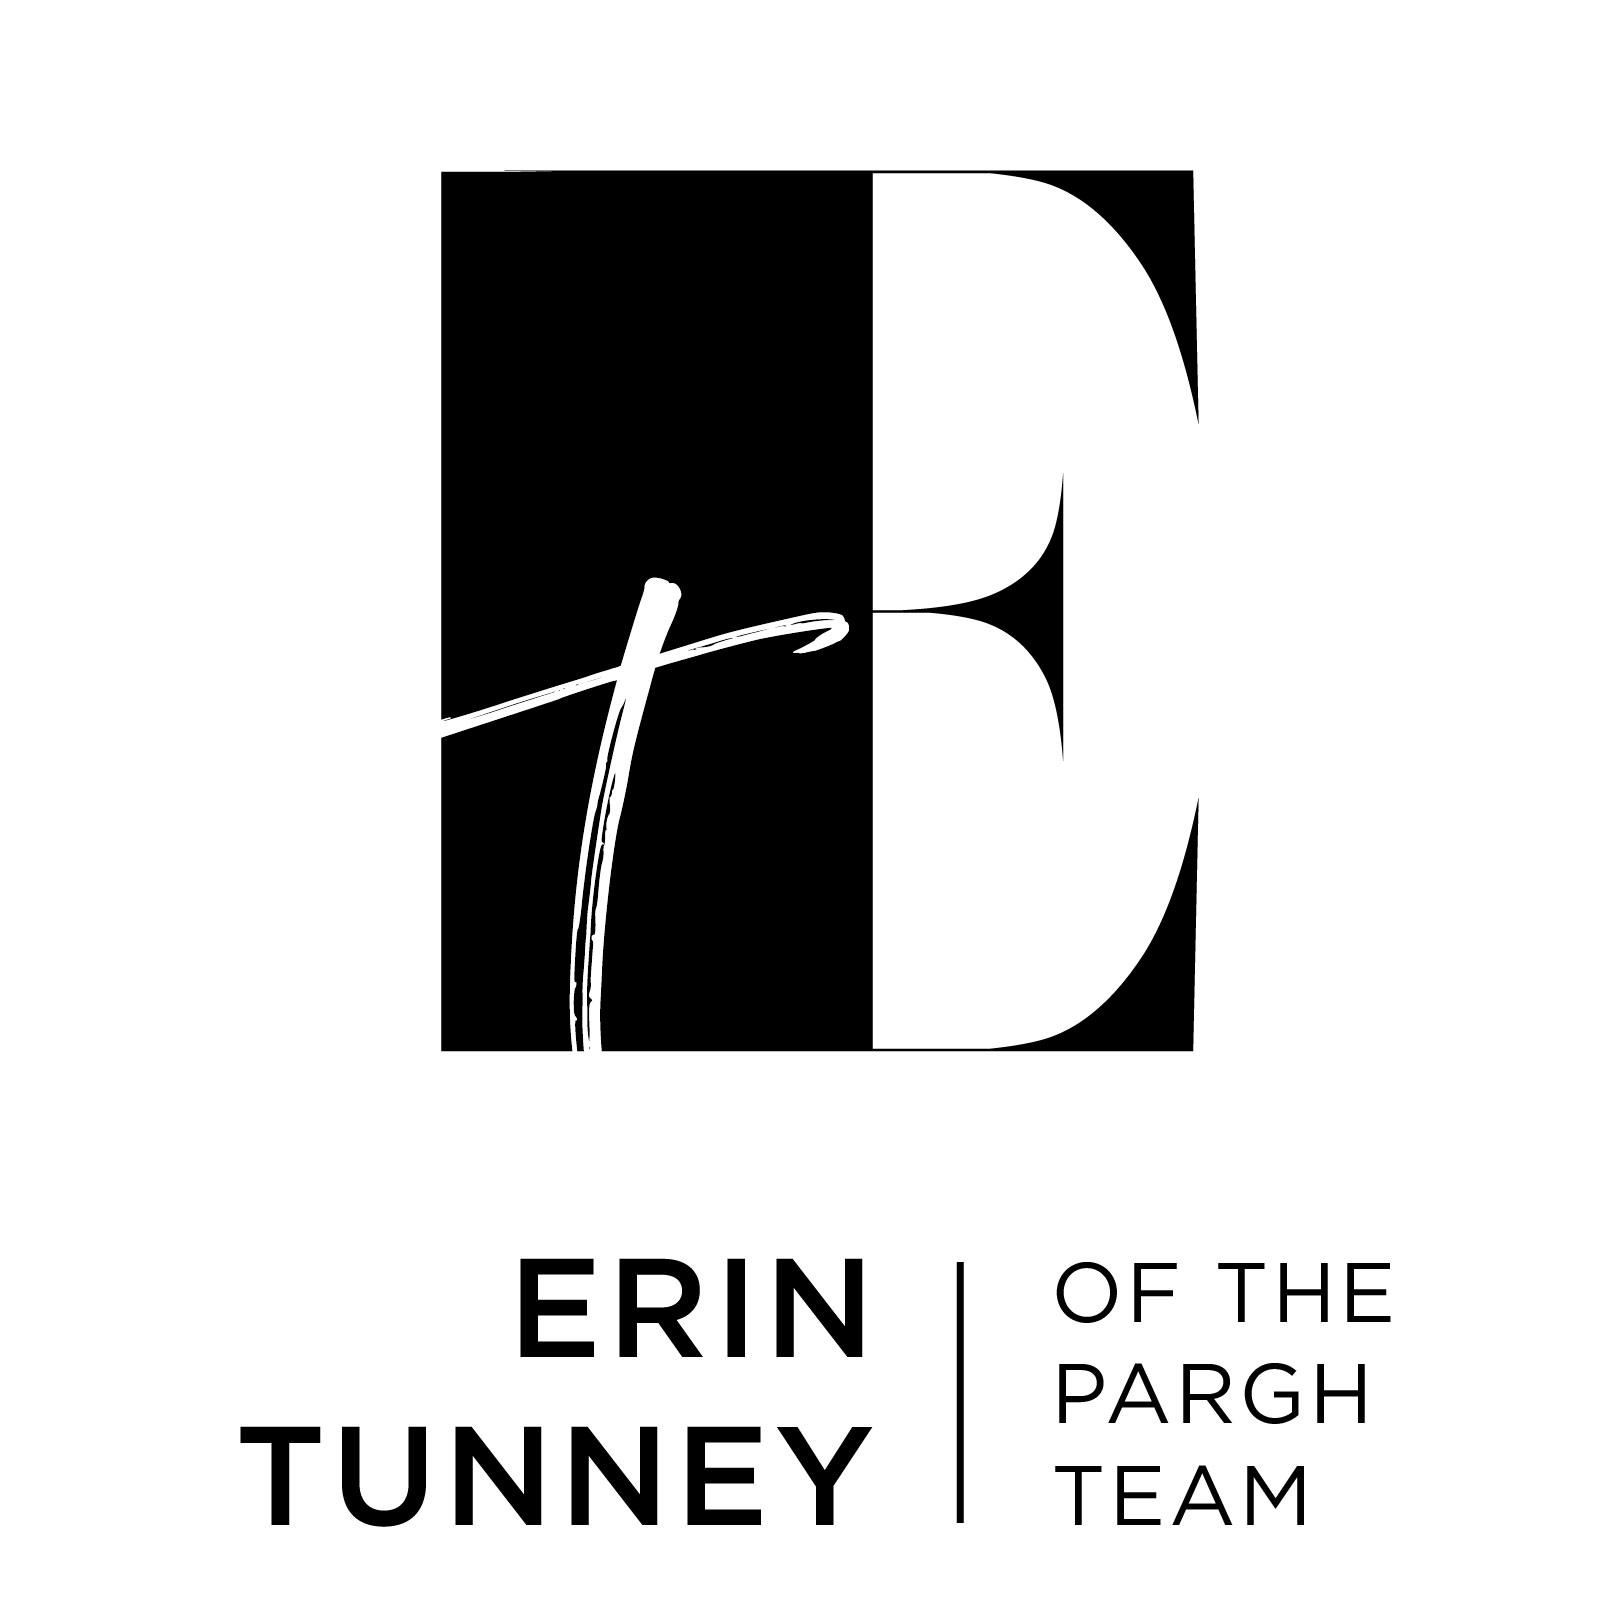 Erin Tunney